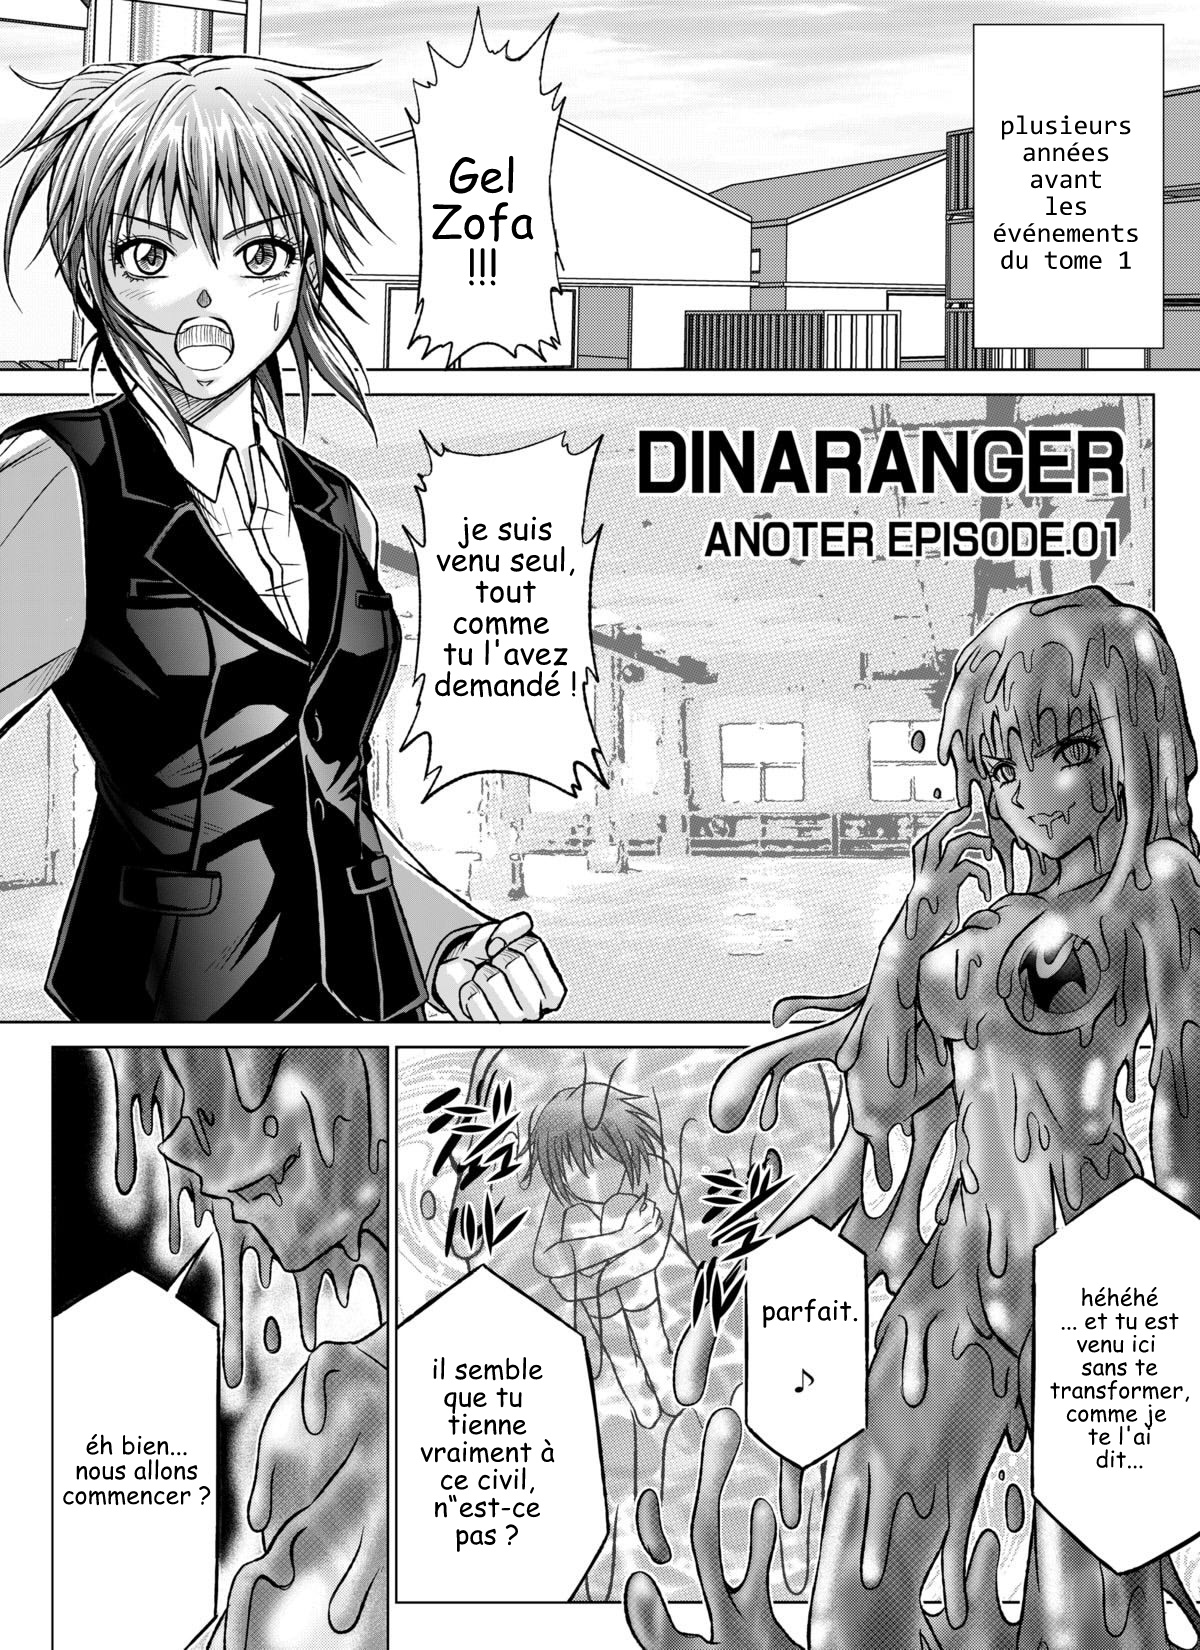 Dinaranger Vol.7-8 numero d'image 60